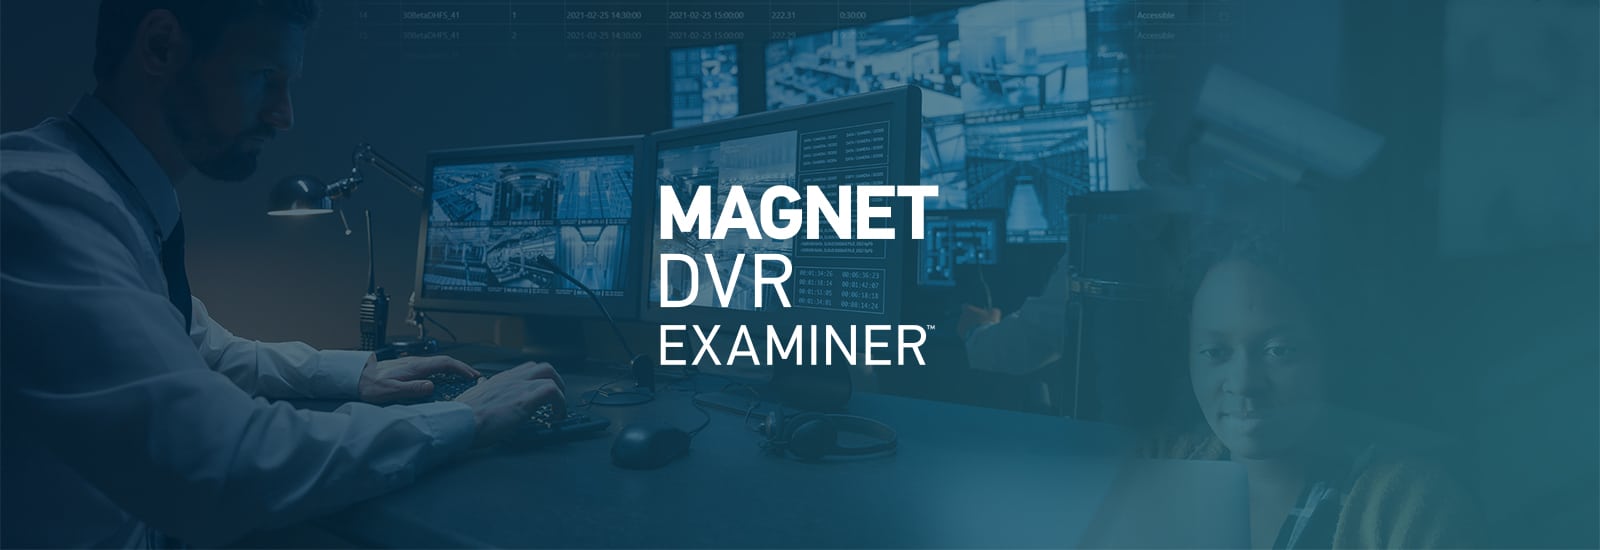 Decorative header for Magnet DVR EXAMINER